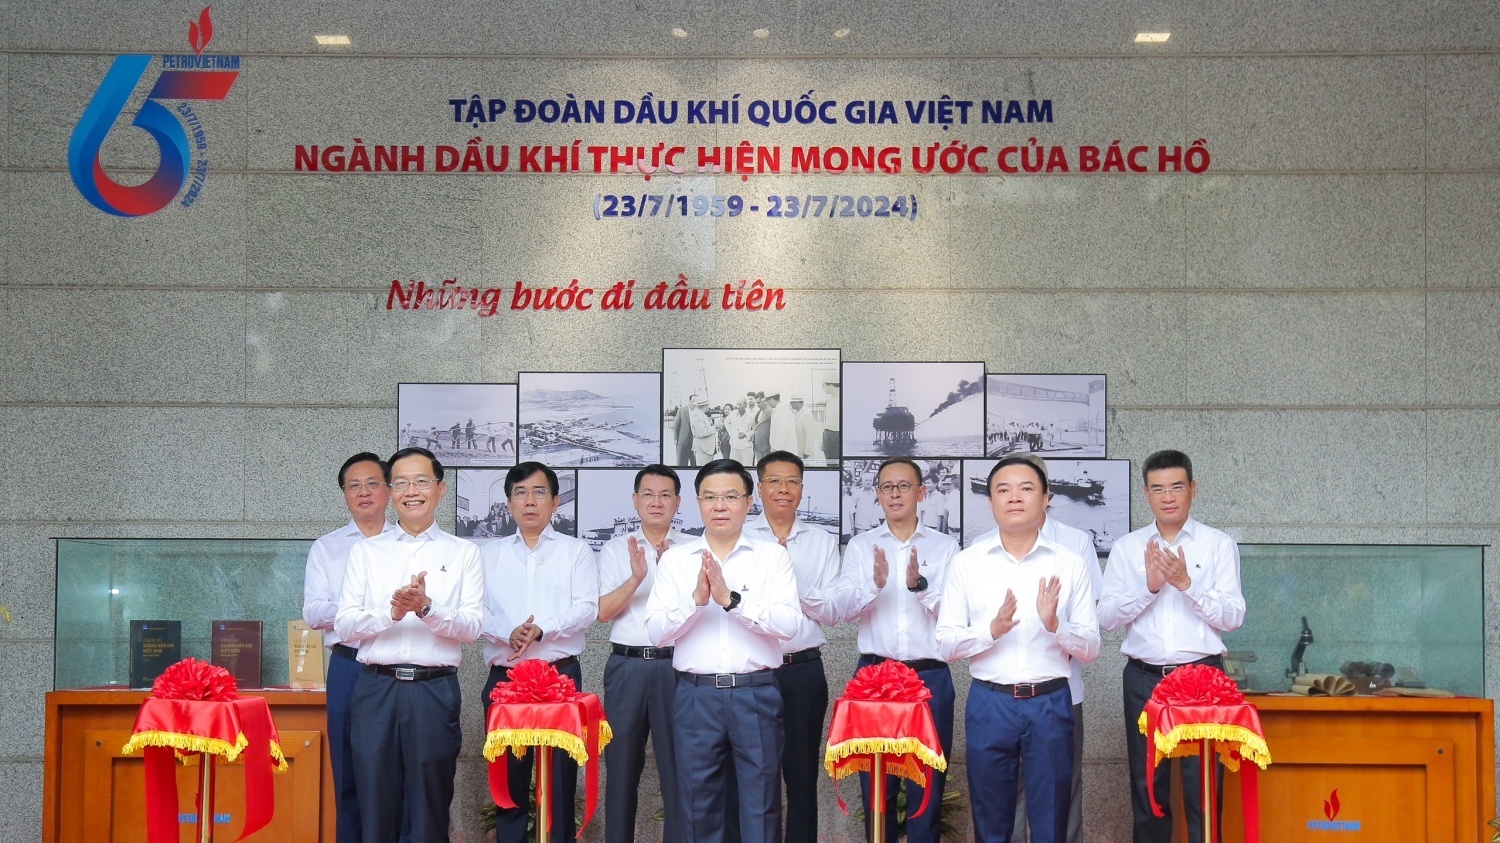 [PetroTimesTV] Khai mạc triển lãm ảnh 65 năm ngành Dầu khí Việt Nam thực hiện mong ước của Bác Hồ